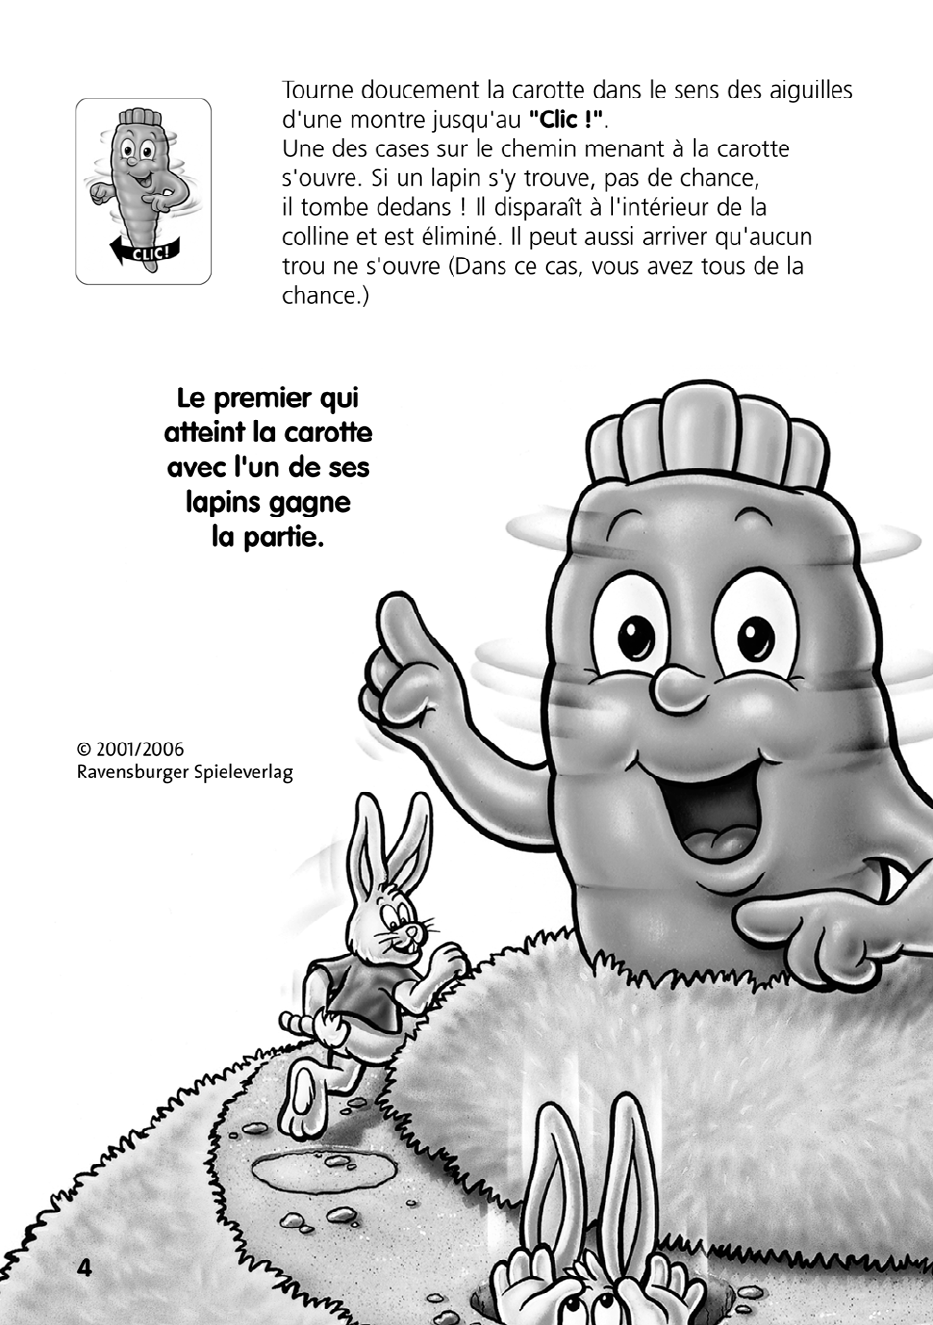 Gearceerd schaak keuken Handleiding Ravensburger bunny hop (pagina 4 van 4) (Frans)